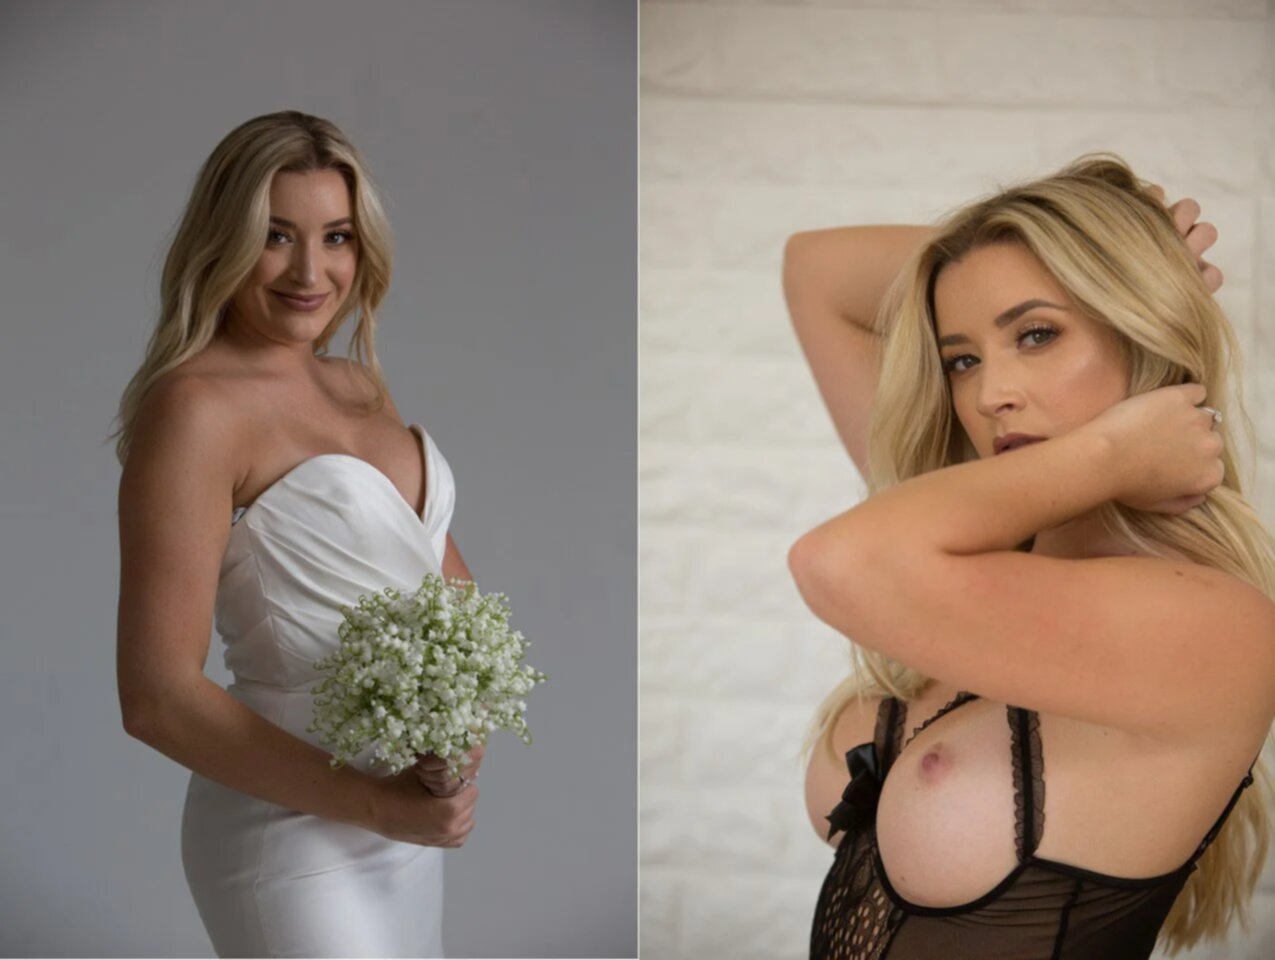 Best amateur brides 1 - Porn Videos and Photos photo